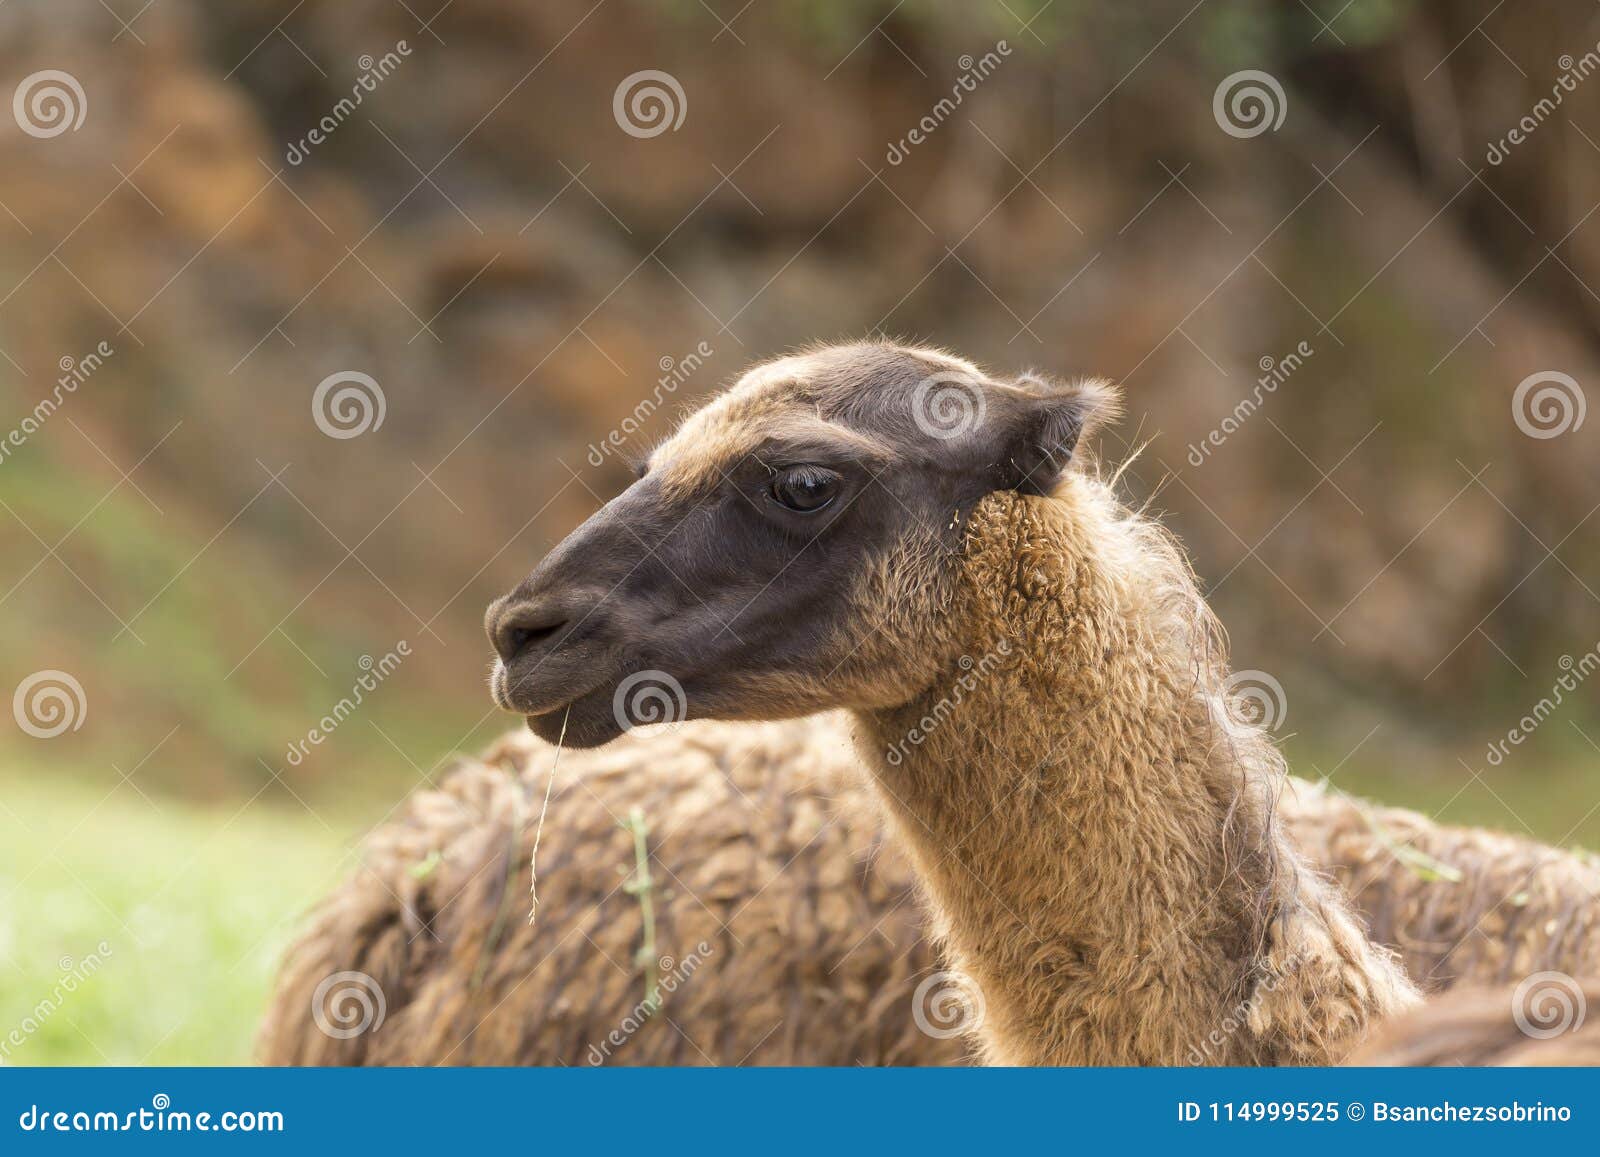 portrait of a llama head, animals of south america